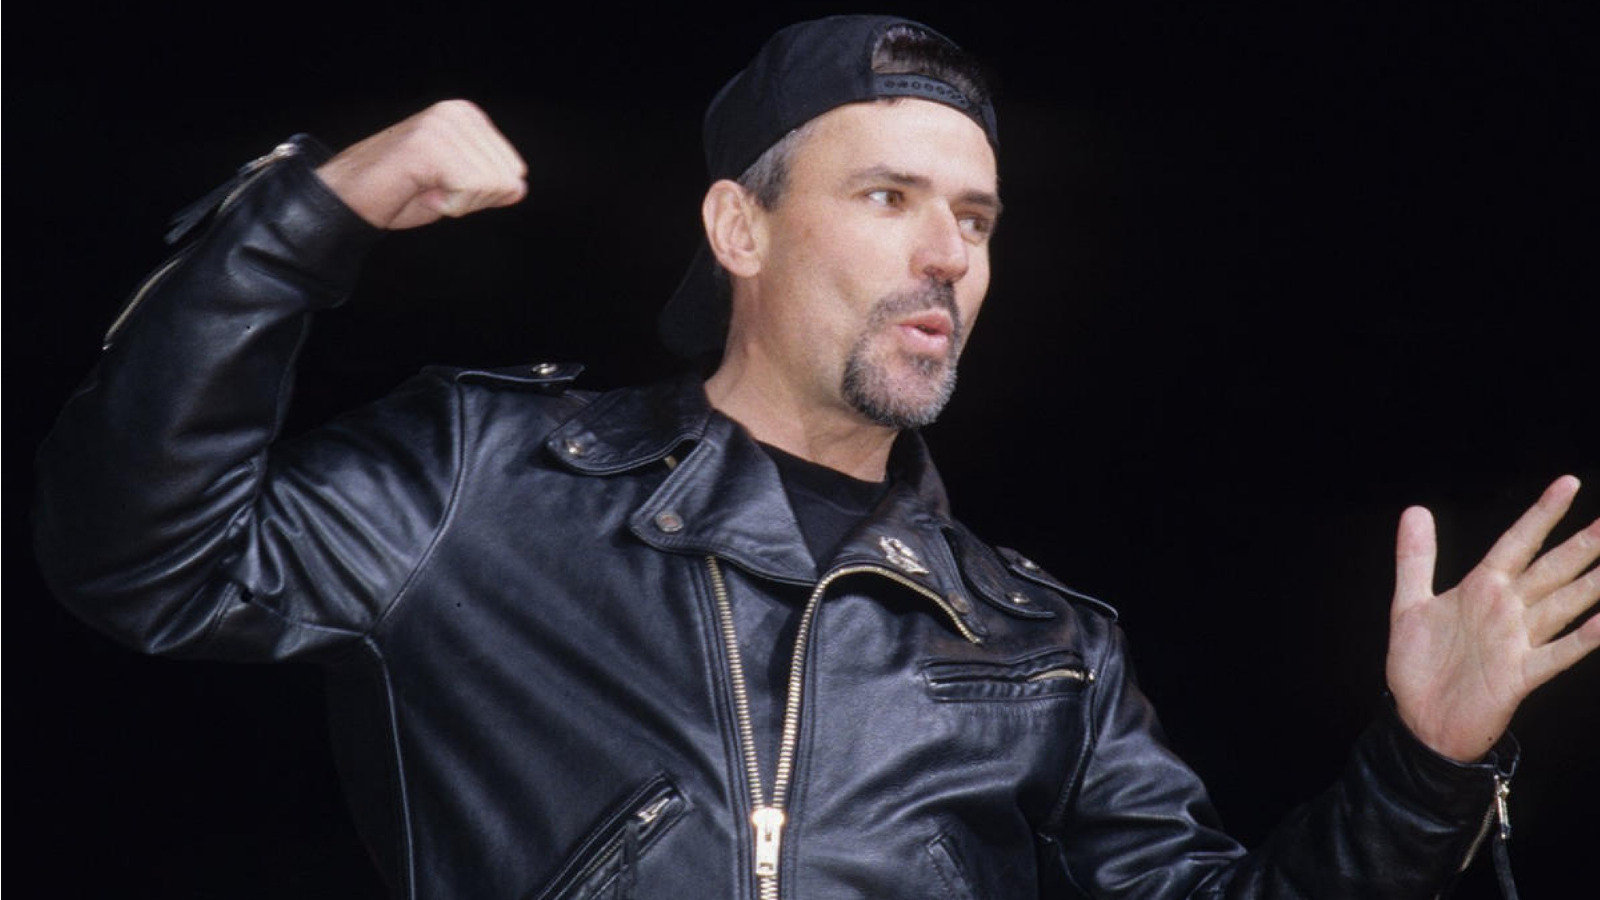 La ex personalidad de WCW recuerda la destreza en artes marciales fuera de pantalla del jefe Eric Bischoff